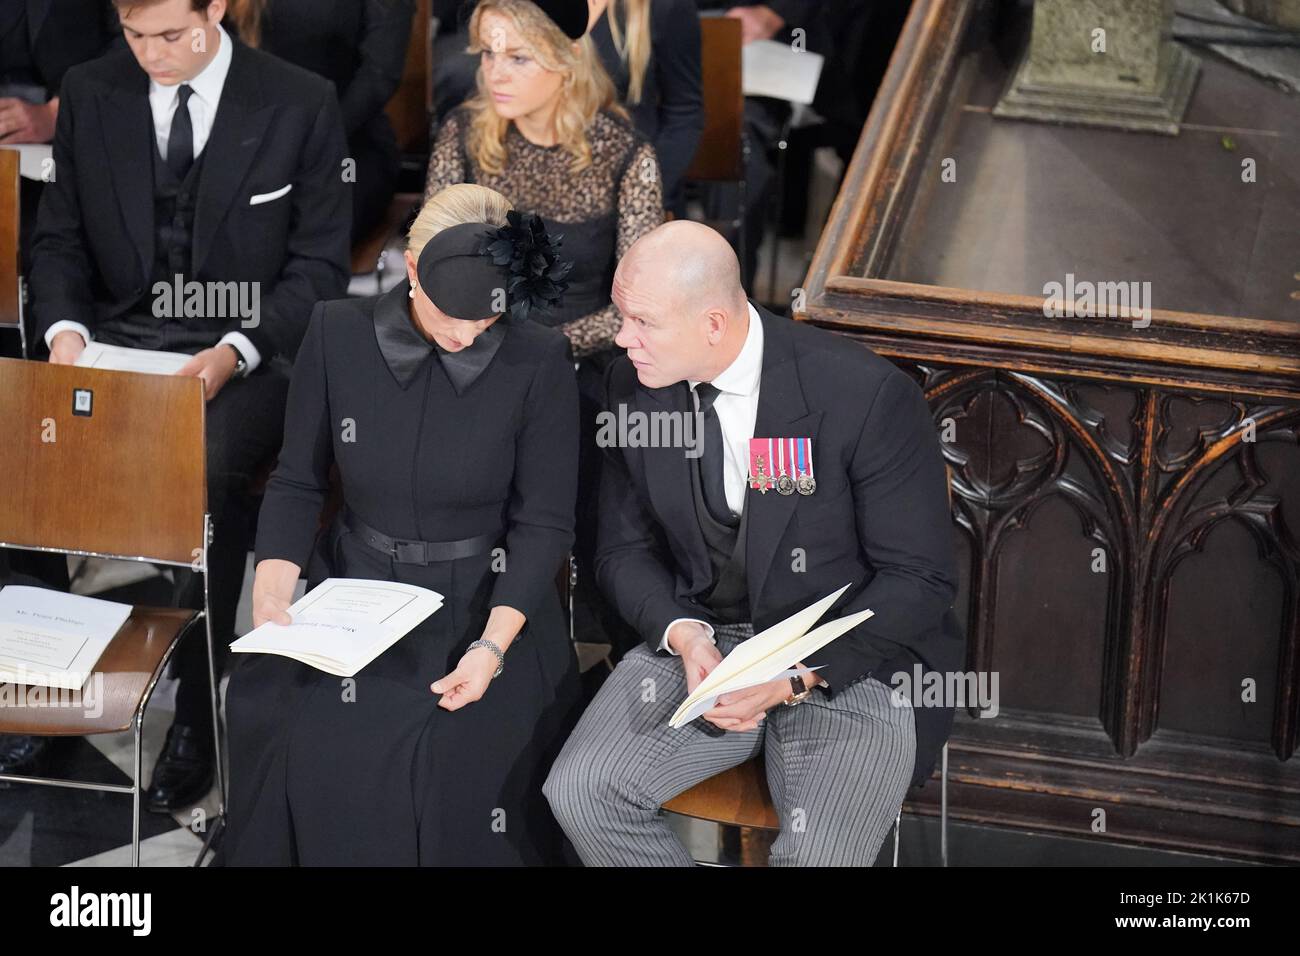 Mike Tindall e Zara Tindall al funerale statale della regina Elisabetta II, tenutosi all'Abbazia di Westminster, Londra. Data immagine: Lunedì 19 settembre 2022. Foto Stock